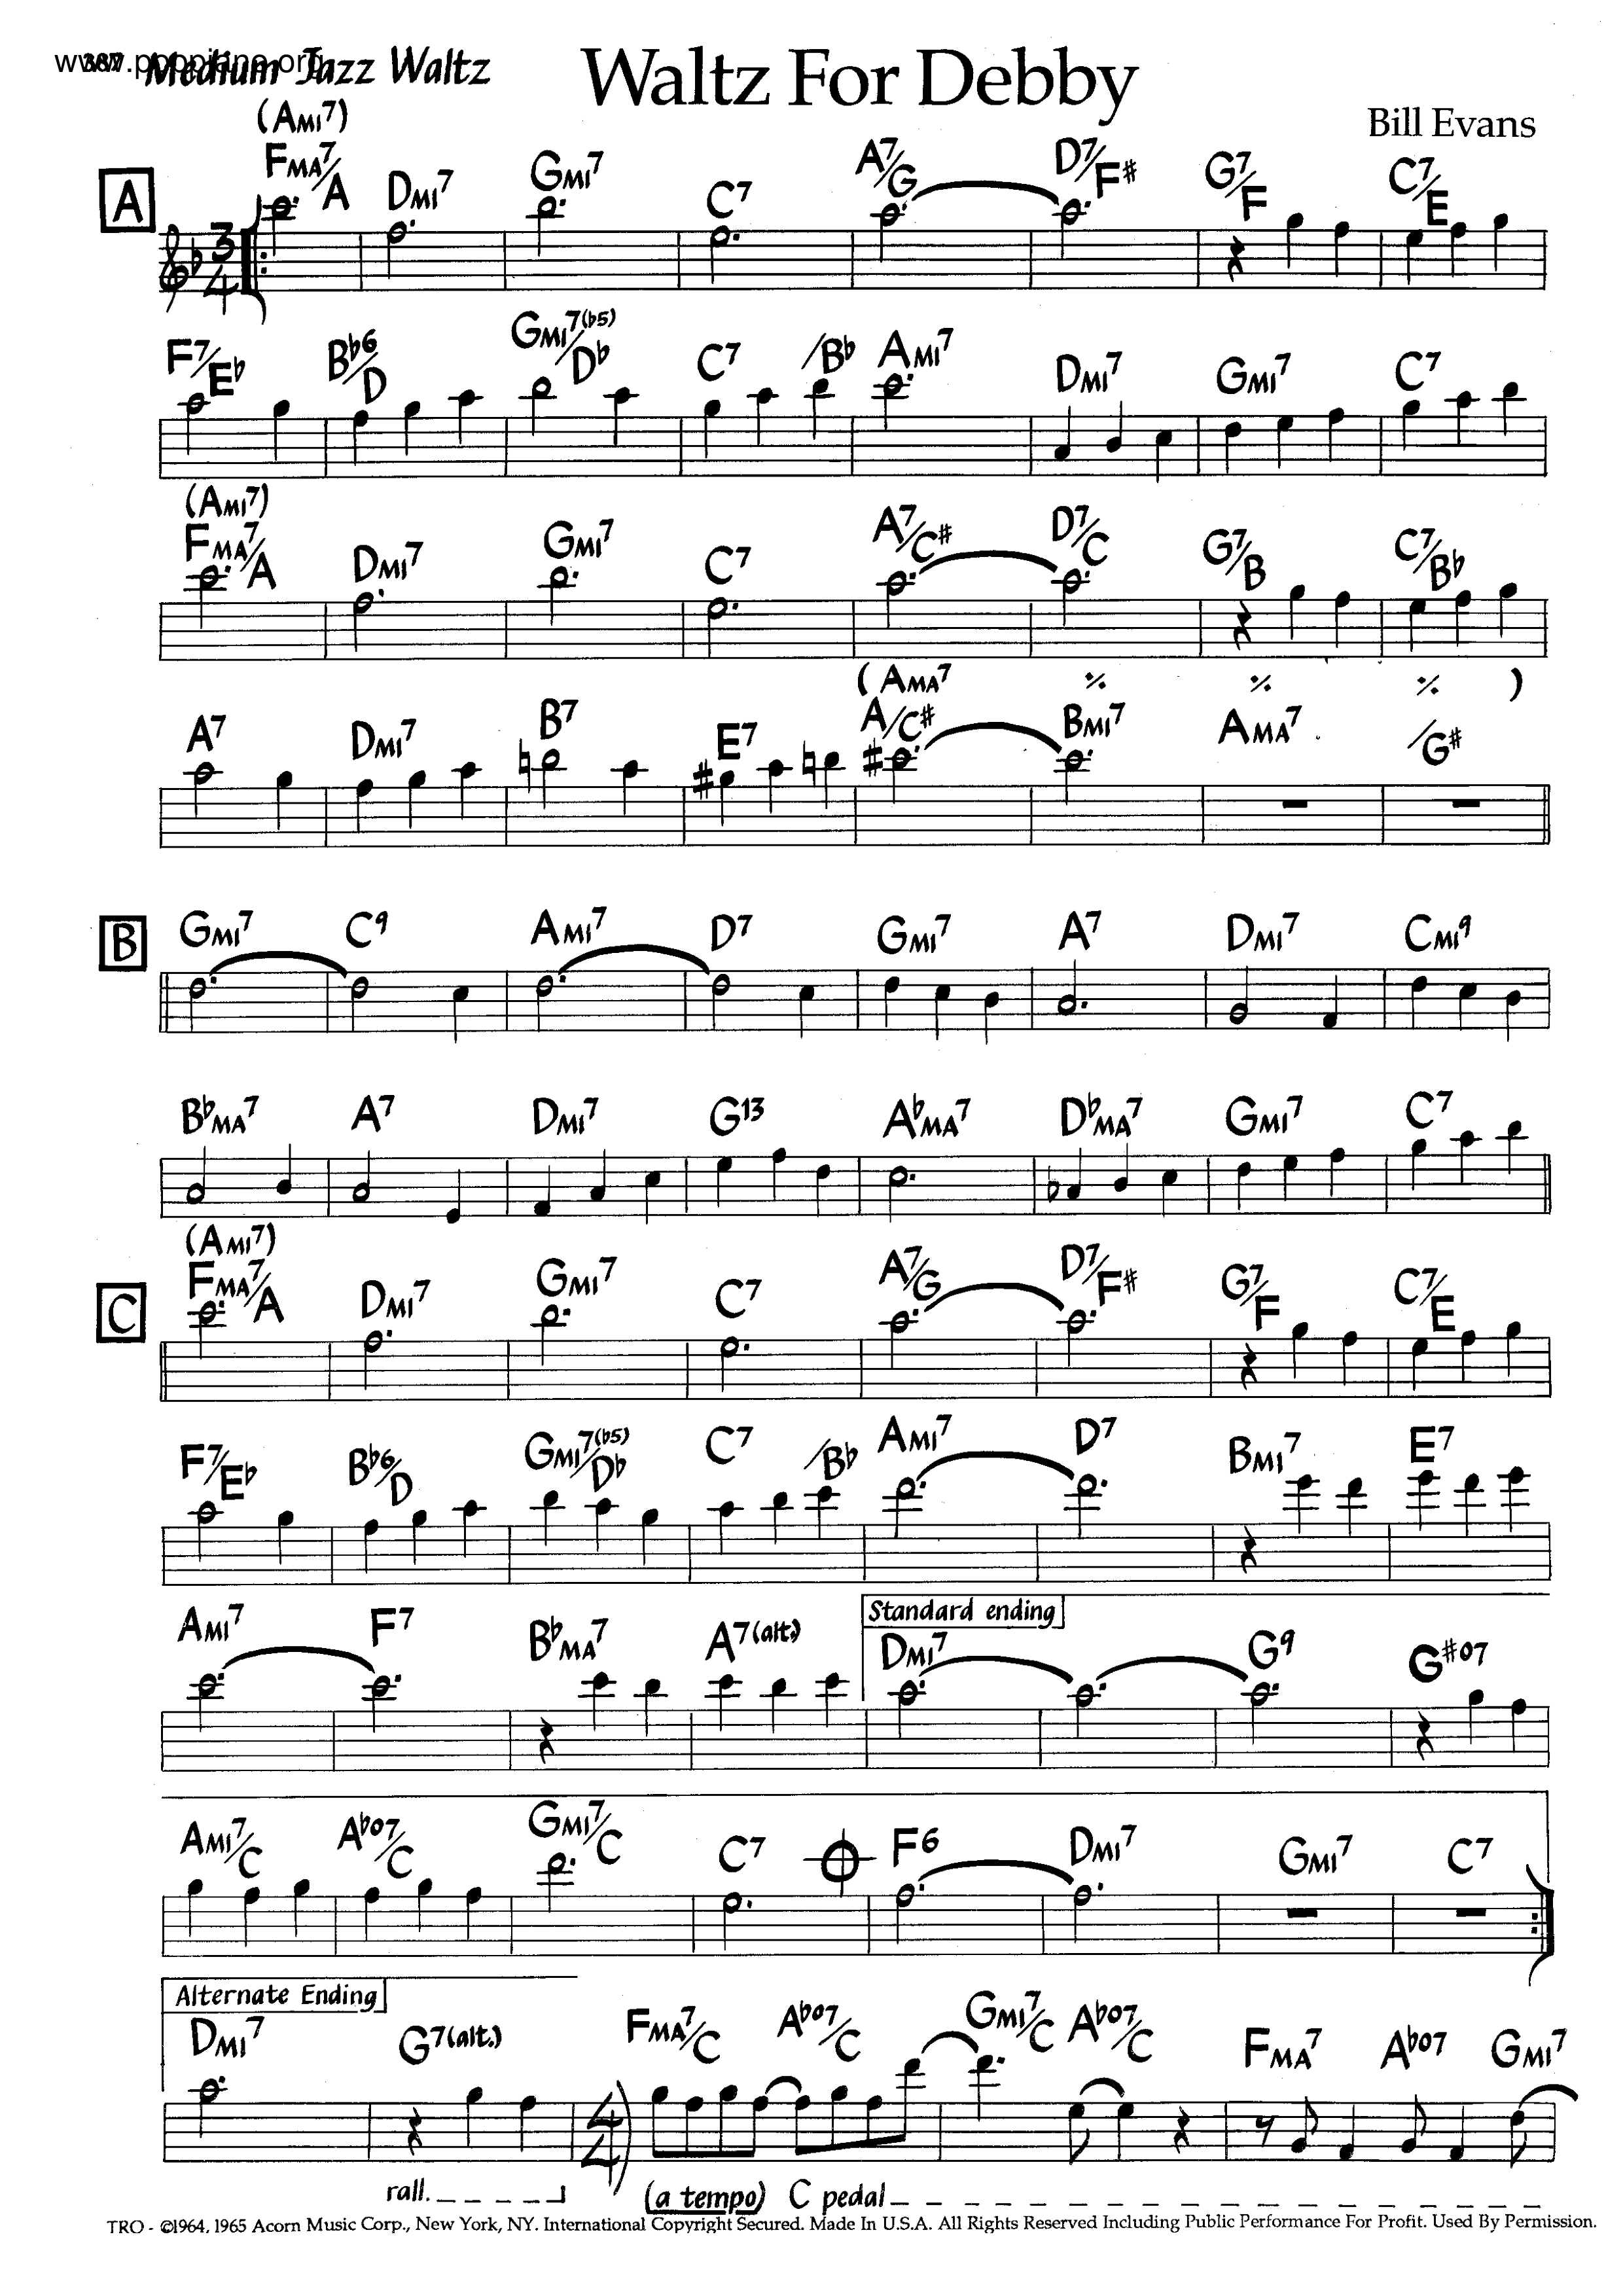 Waltz For Debby Score